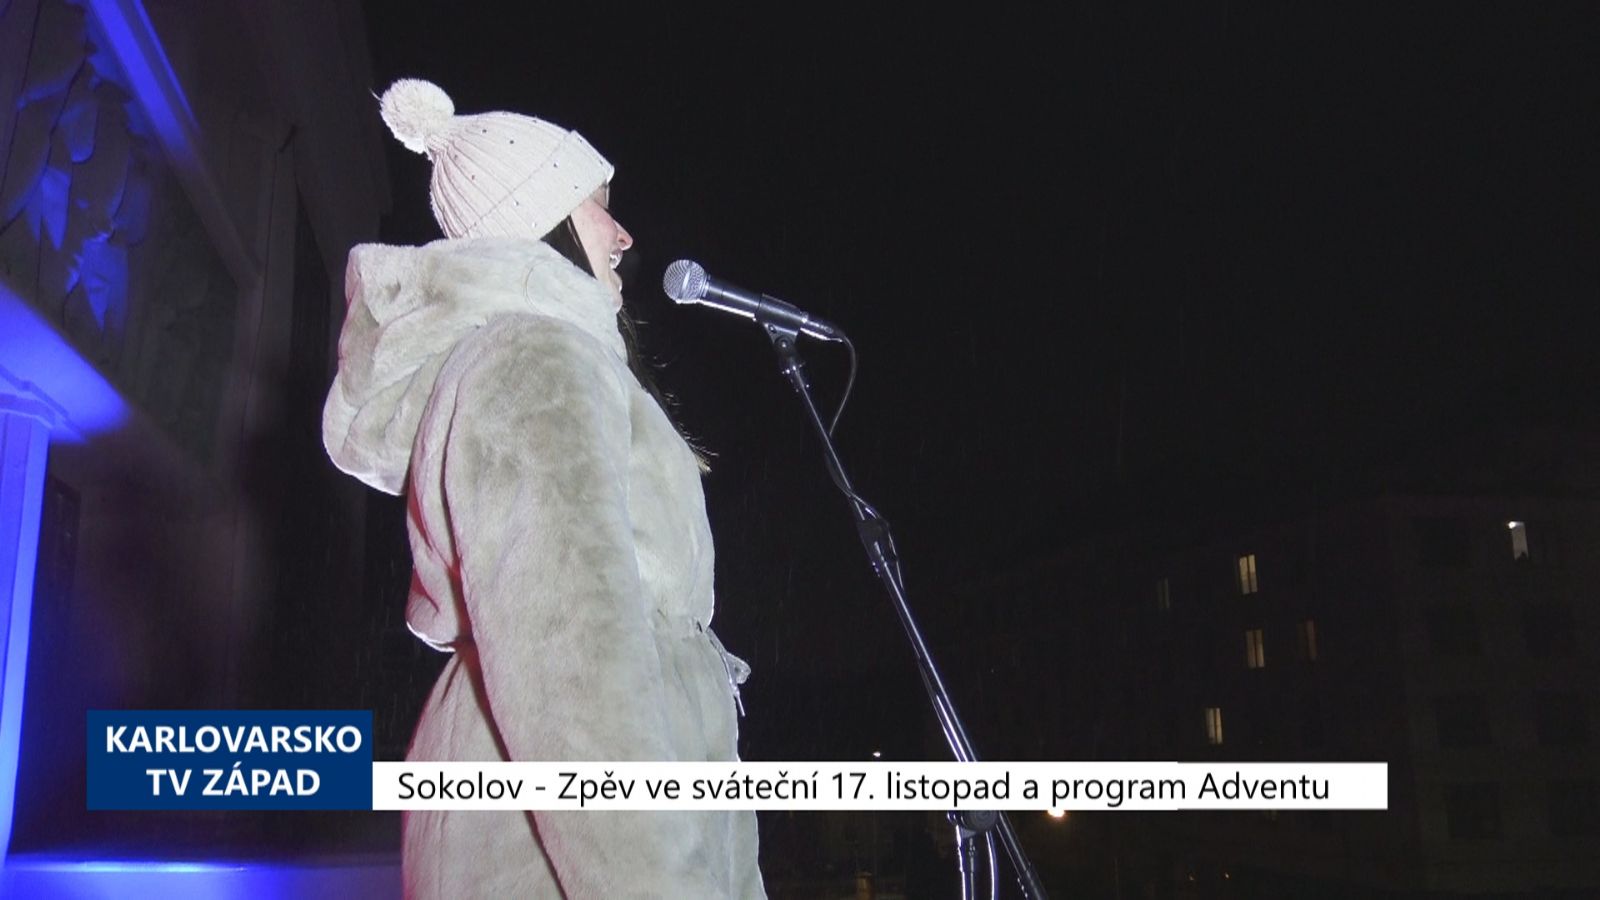 Sokolov: Zpěv ve sváteční 17. listopad a program Adventu (TV Západ)